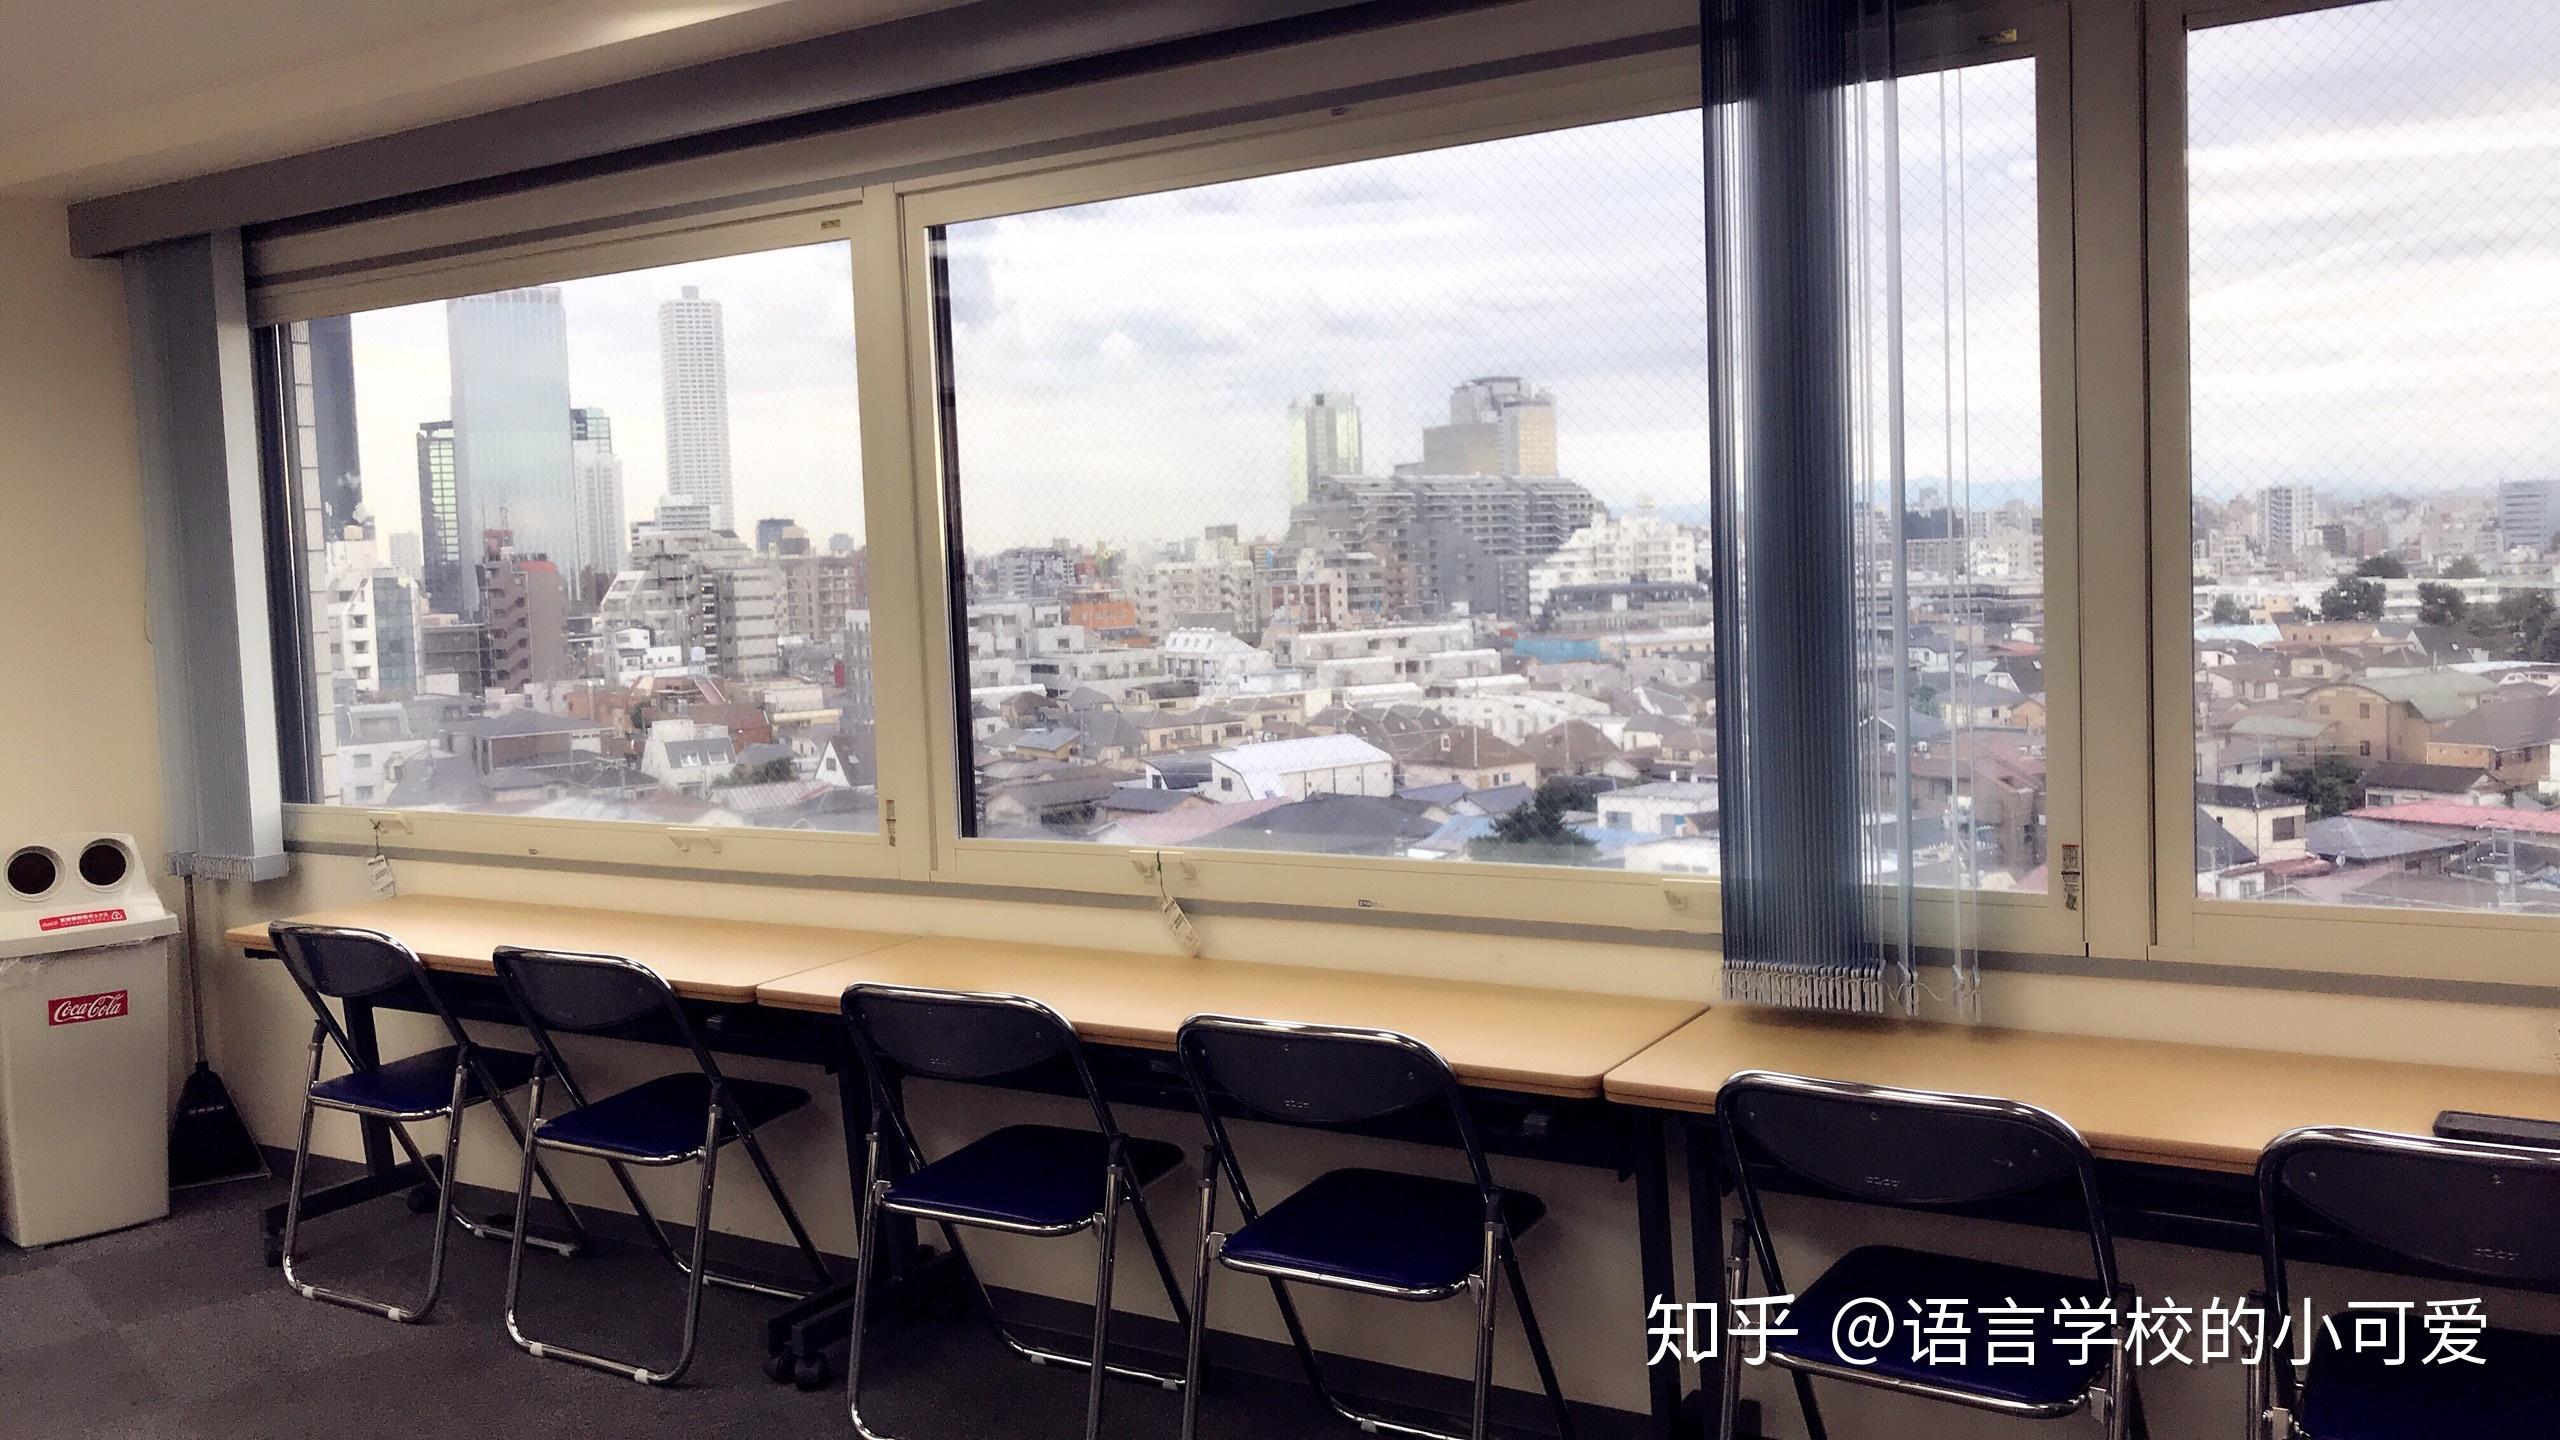 去日本读语言学校准备留考,东京新宿区好的语